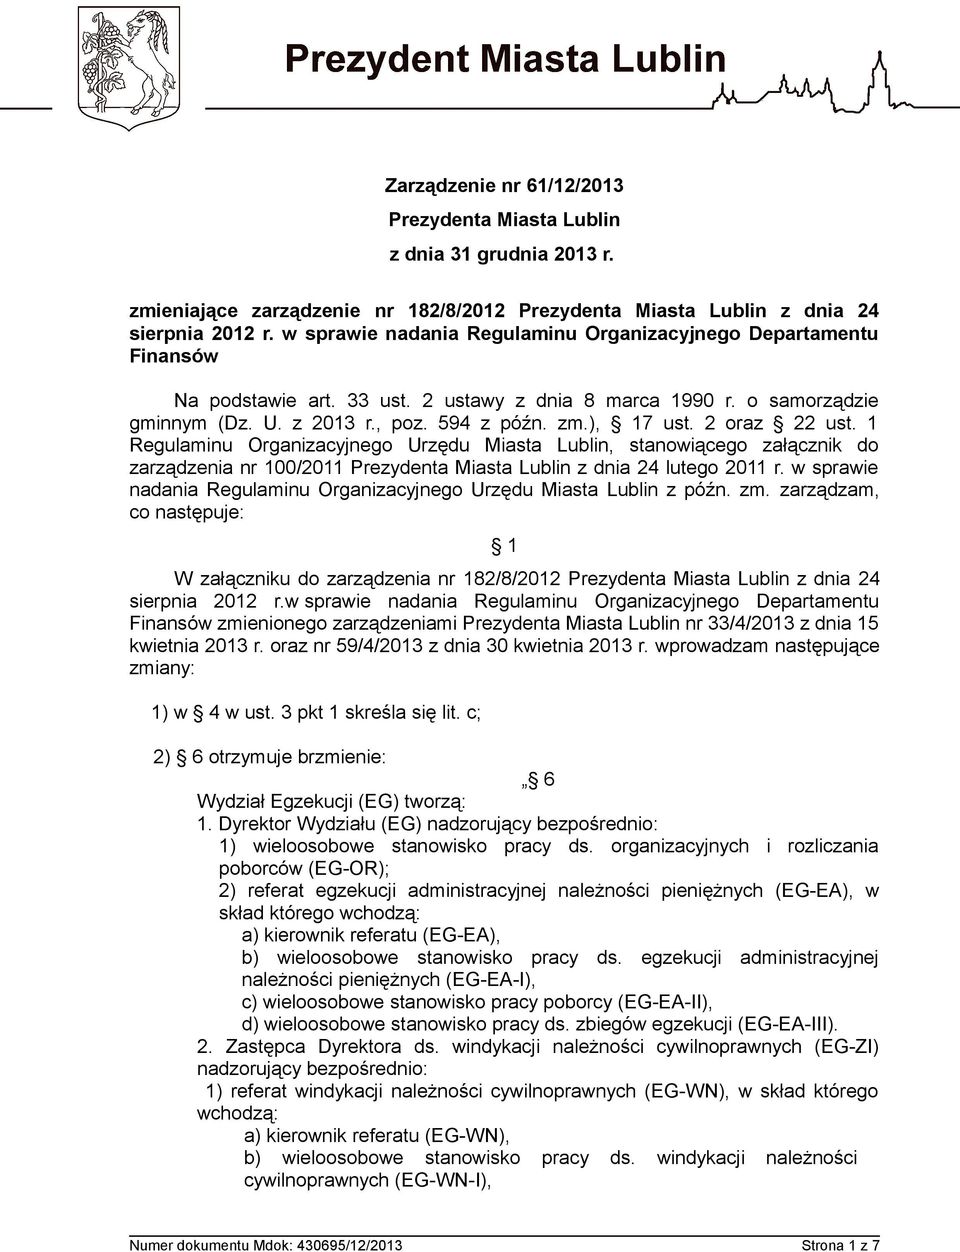 2 oraz 22 ust. 1 Regulaminu Organizacyjnego Urzędu Miasta Lublin, stanowiącego załącznik do zarządzenia nr 100/2011 Prezydenta Miasta Lublin z dnia 24 lutego 2011 r.